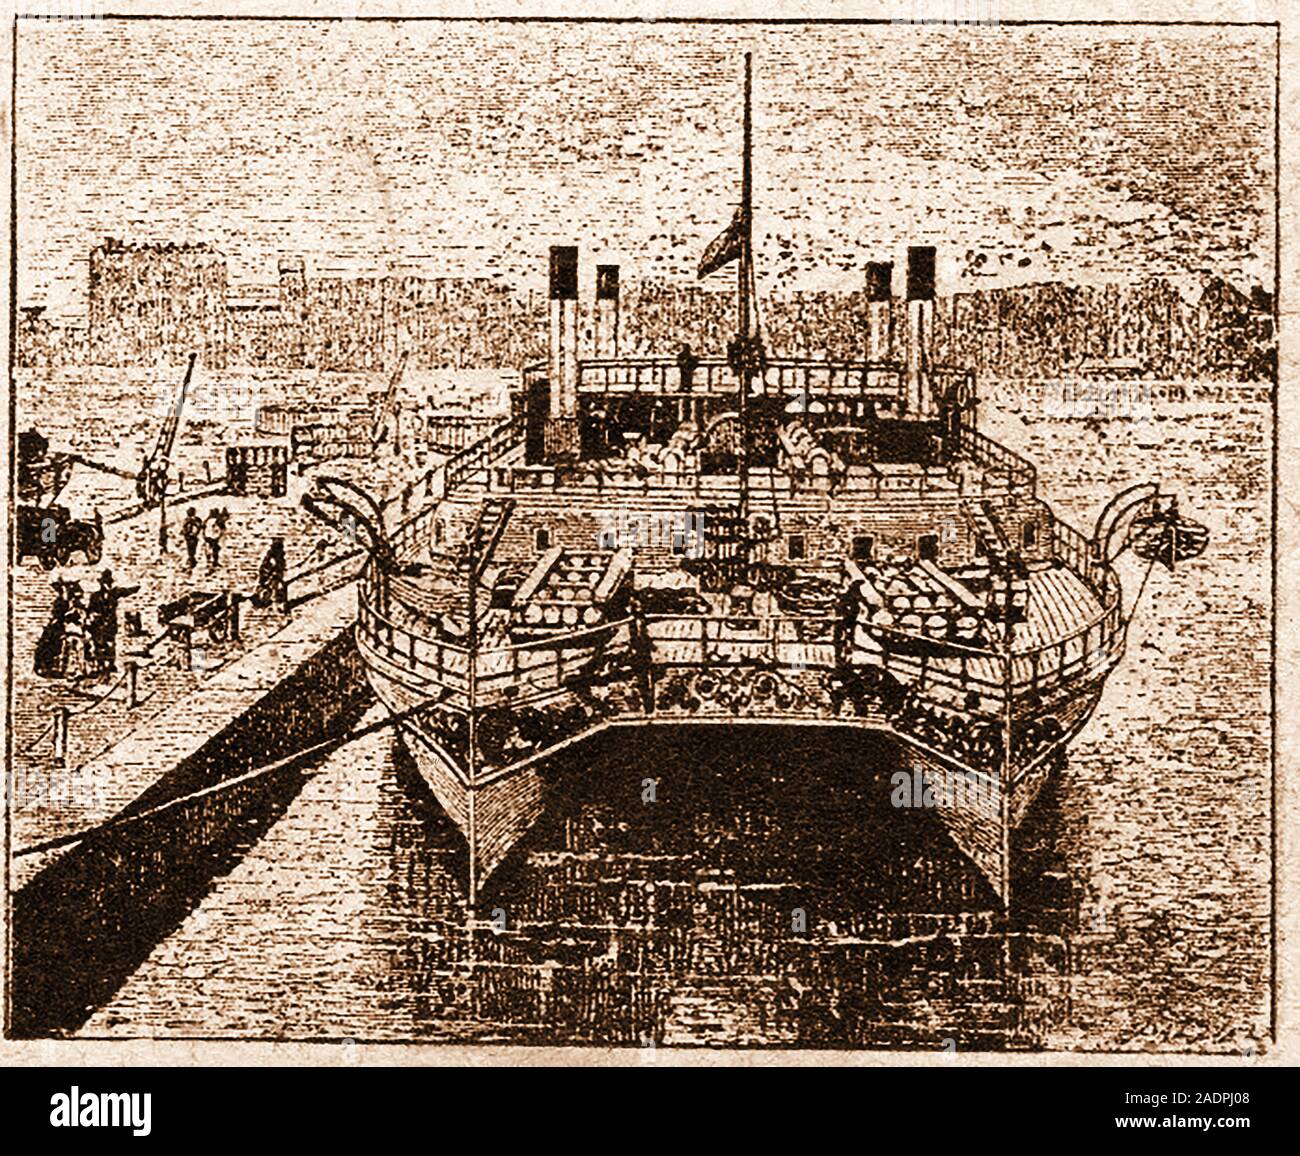 Strano inizio invenzioni - le petroliere a doppio scafo stile catamarano nave da carico. Un prototipo è stato costruito dal Tamigi Ferramenta & Co di costruzione navale nel 1874 ma poi si è persa per la storia. Foto Stock